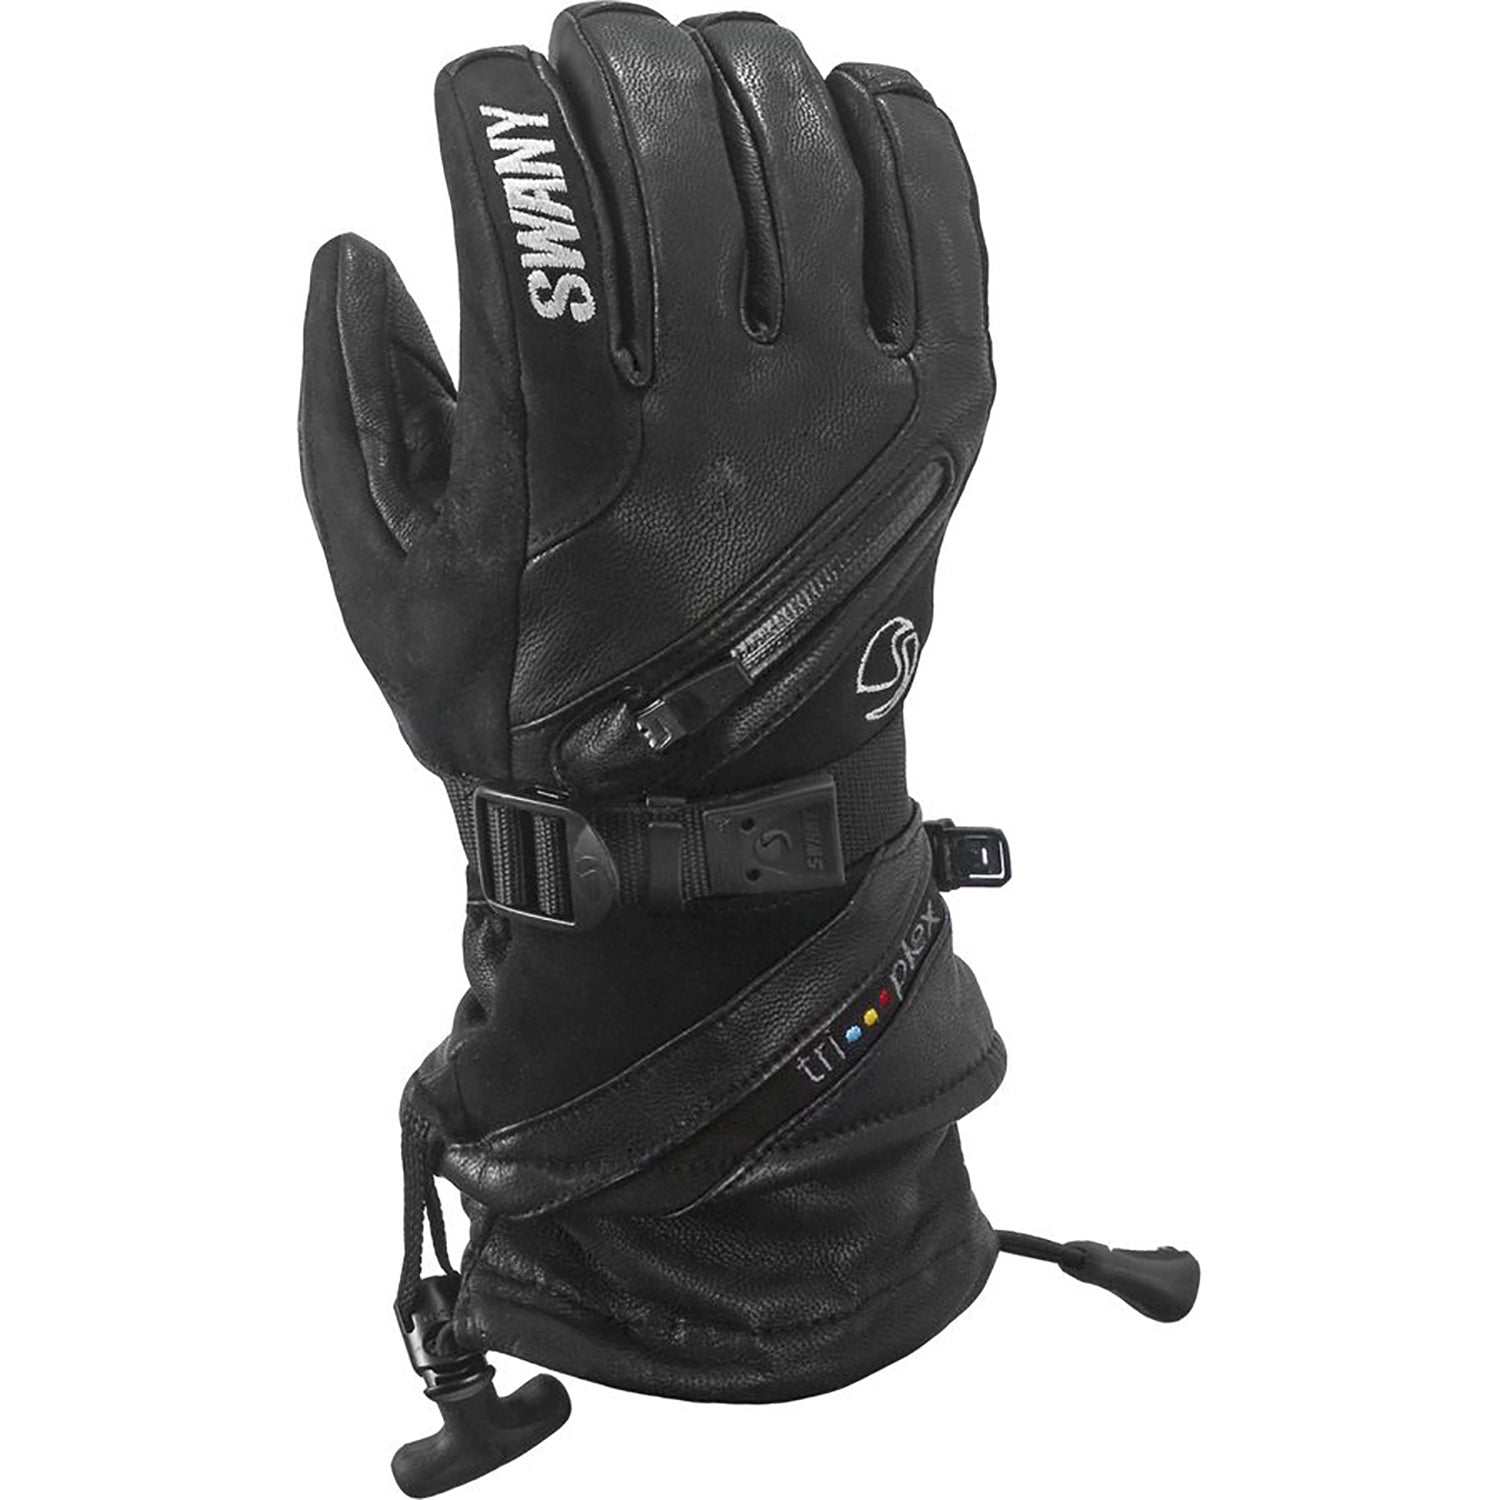 Swany X-Cell II Ski Glove 2018 Black 